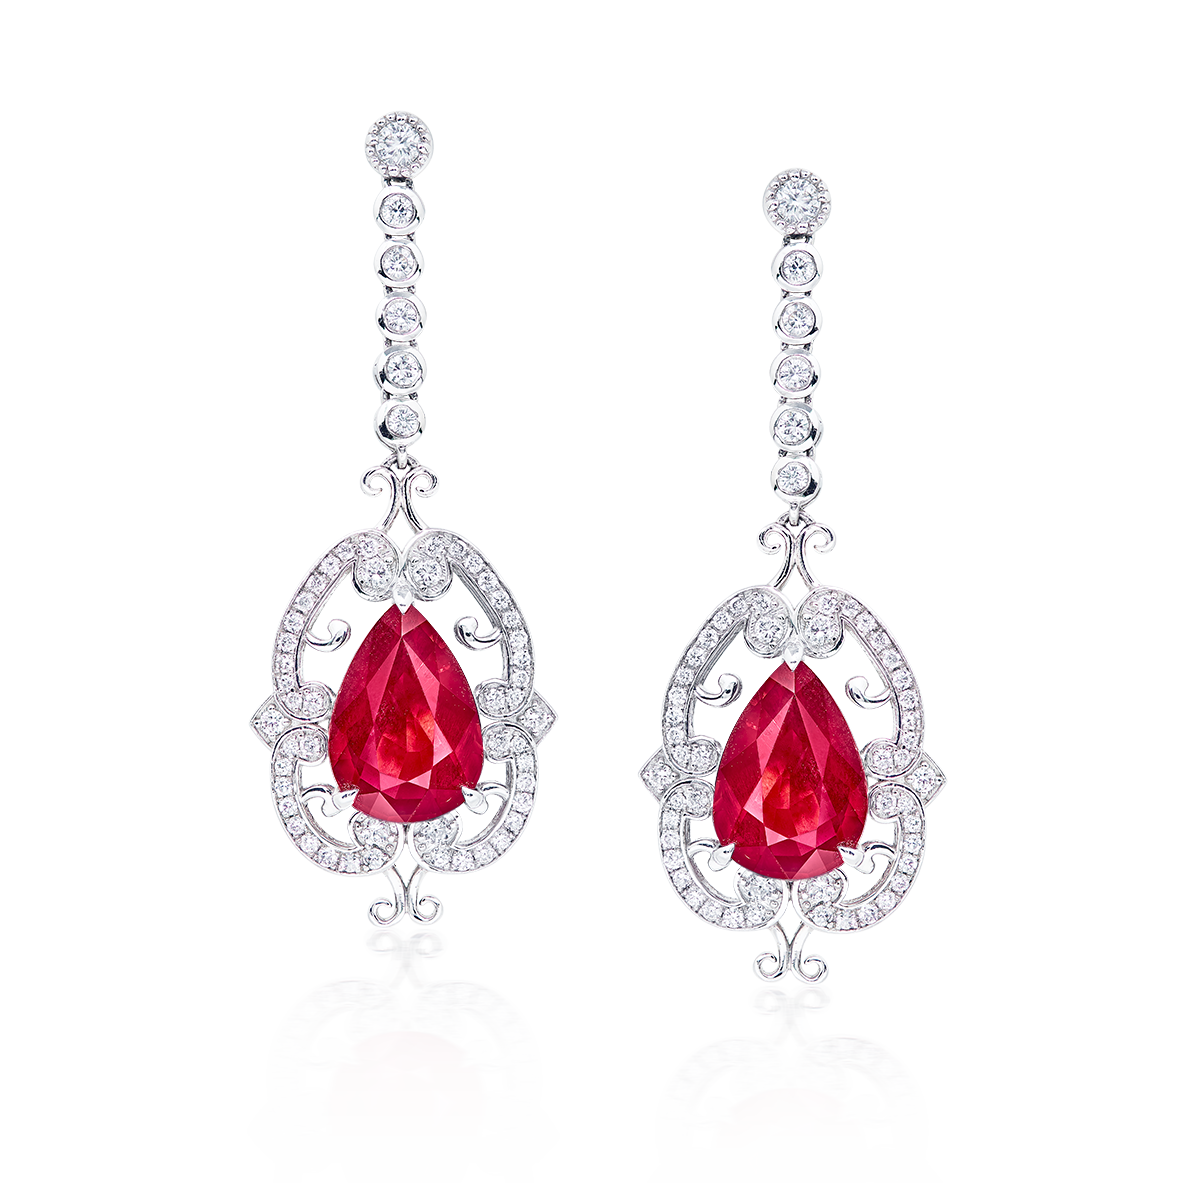 6.09克拉 莫三比克天然無燒艷彩紅寶鑽石耳環
Pair of Mozambique Vivid Red 
Ruby and Diamond Pendant Earrings